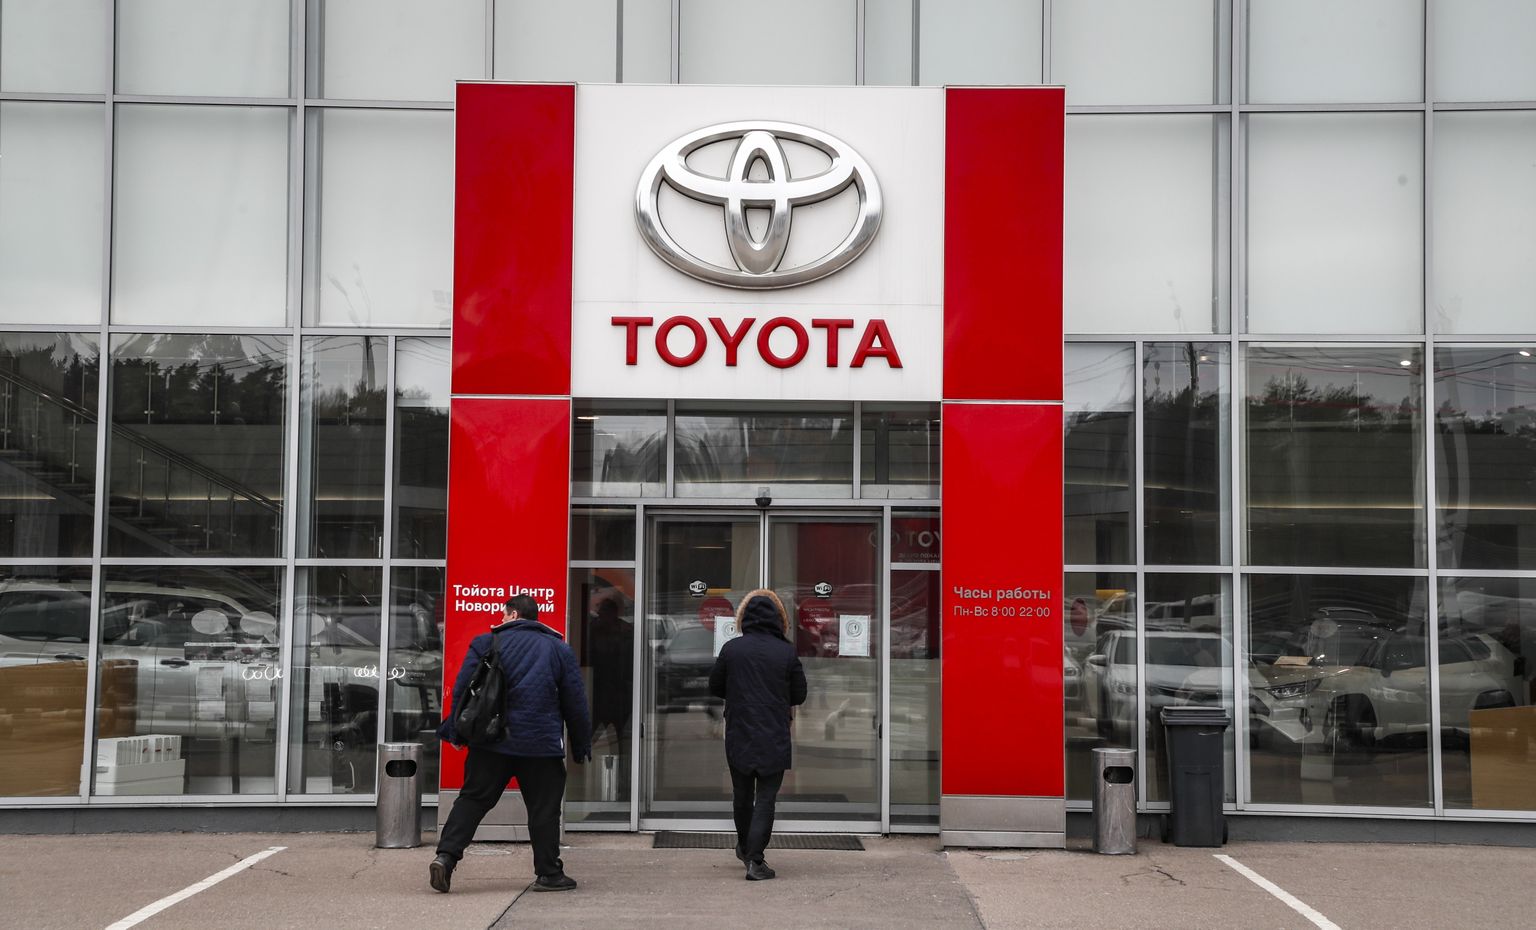 Toyota в России